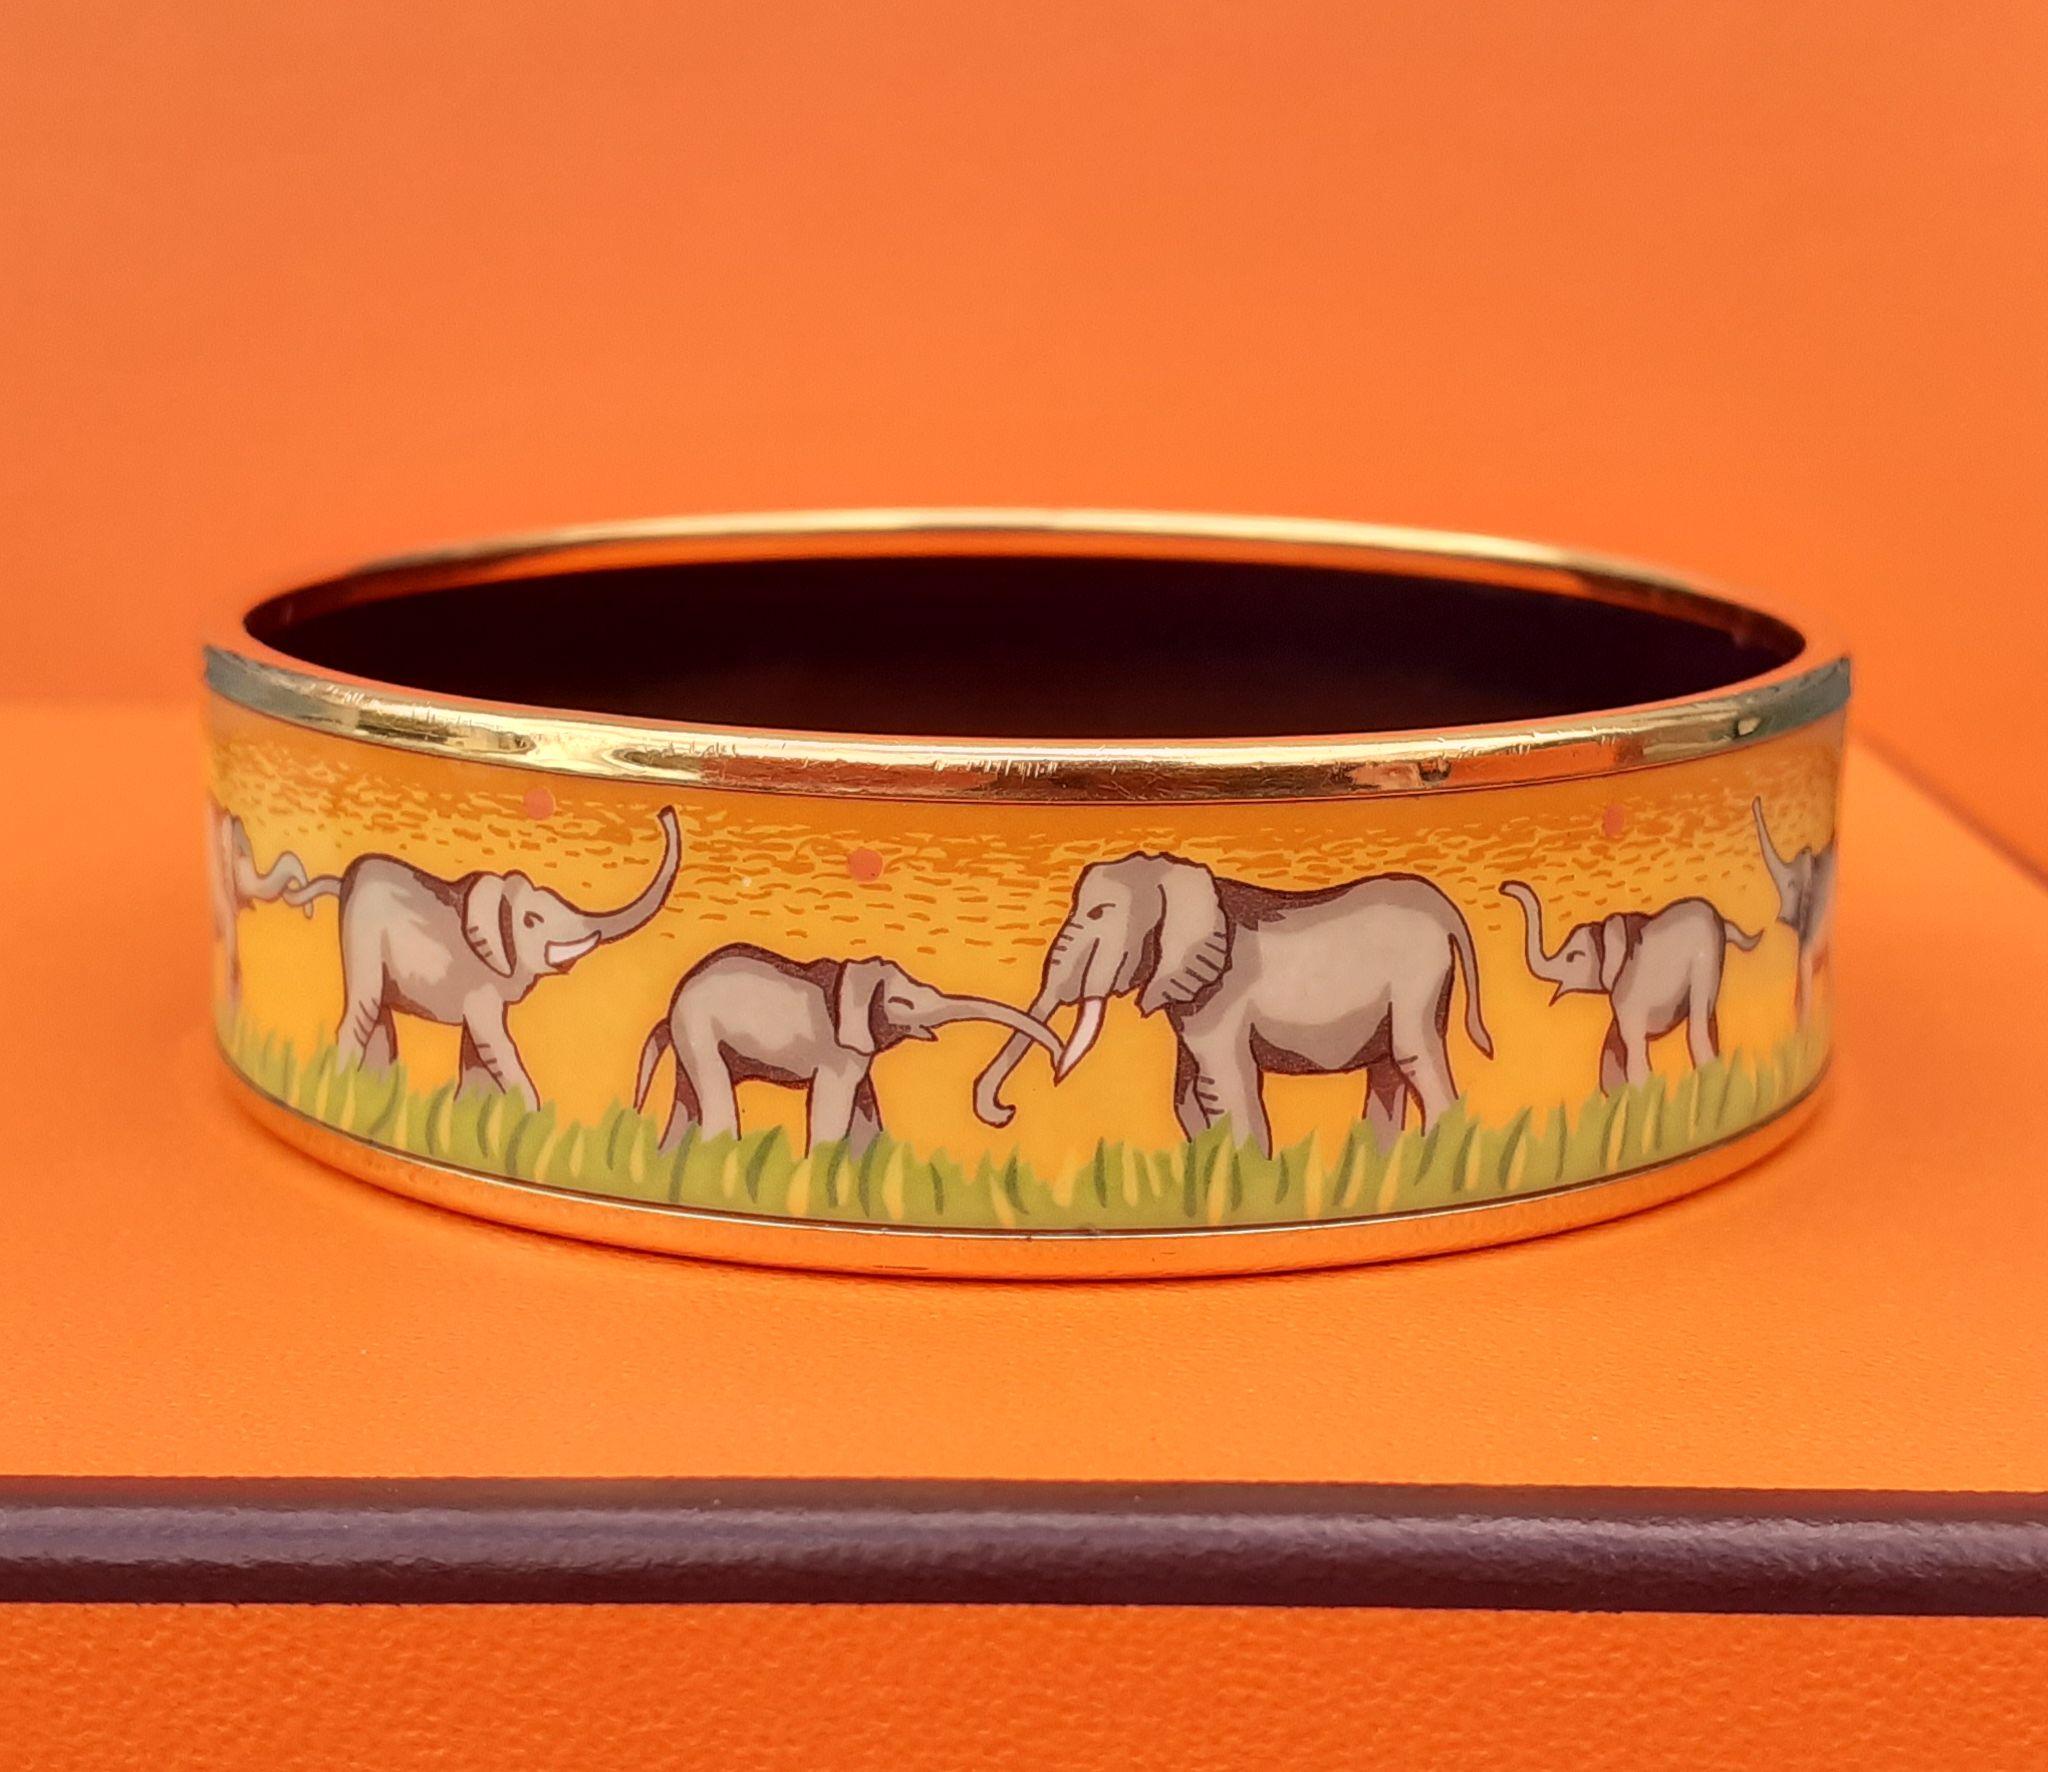 Hermès Enamel Printed Bracelet Elephants Grazing Yellow Gold Hdw Size 65 7